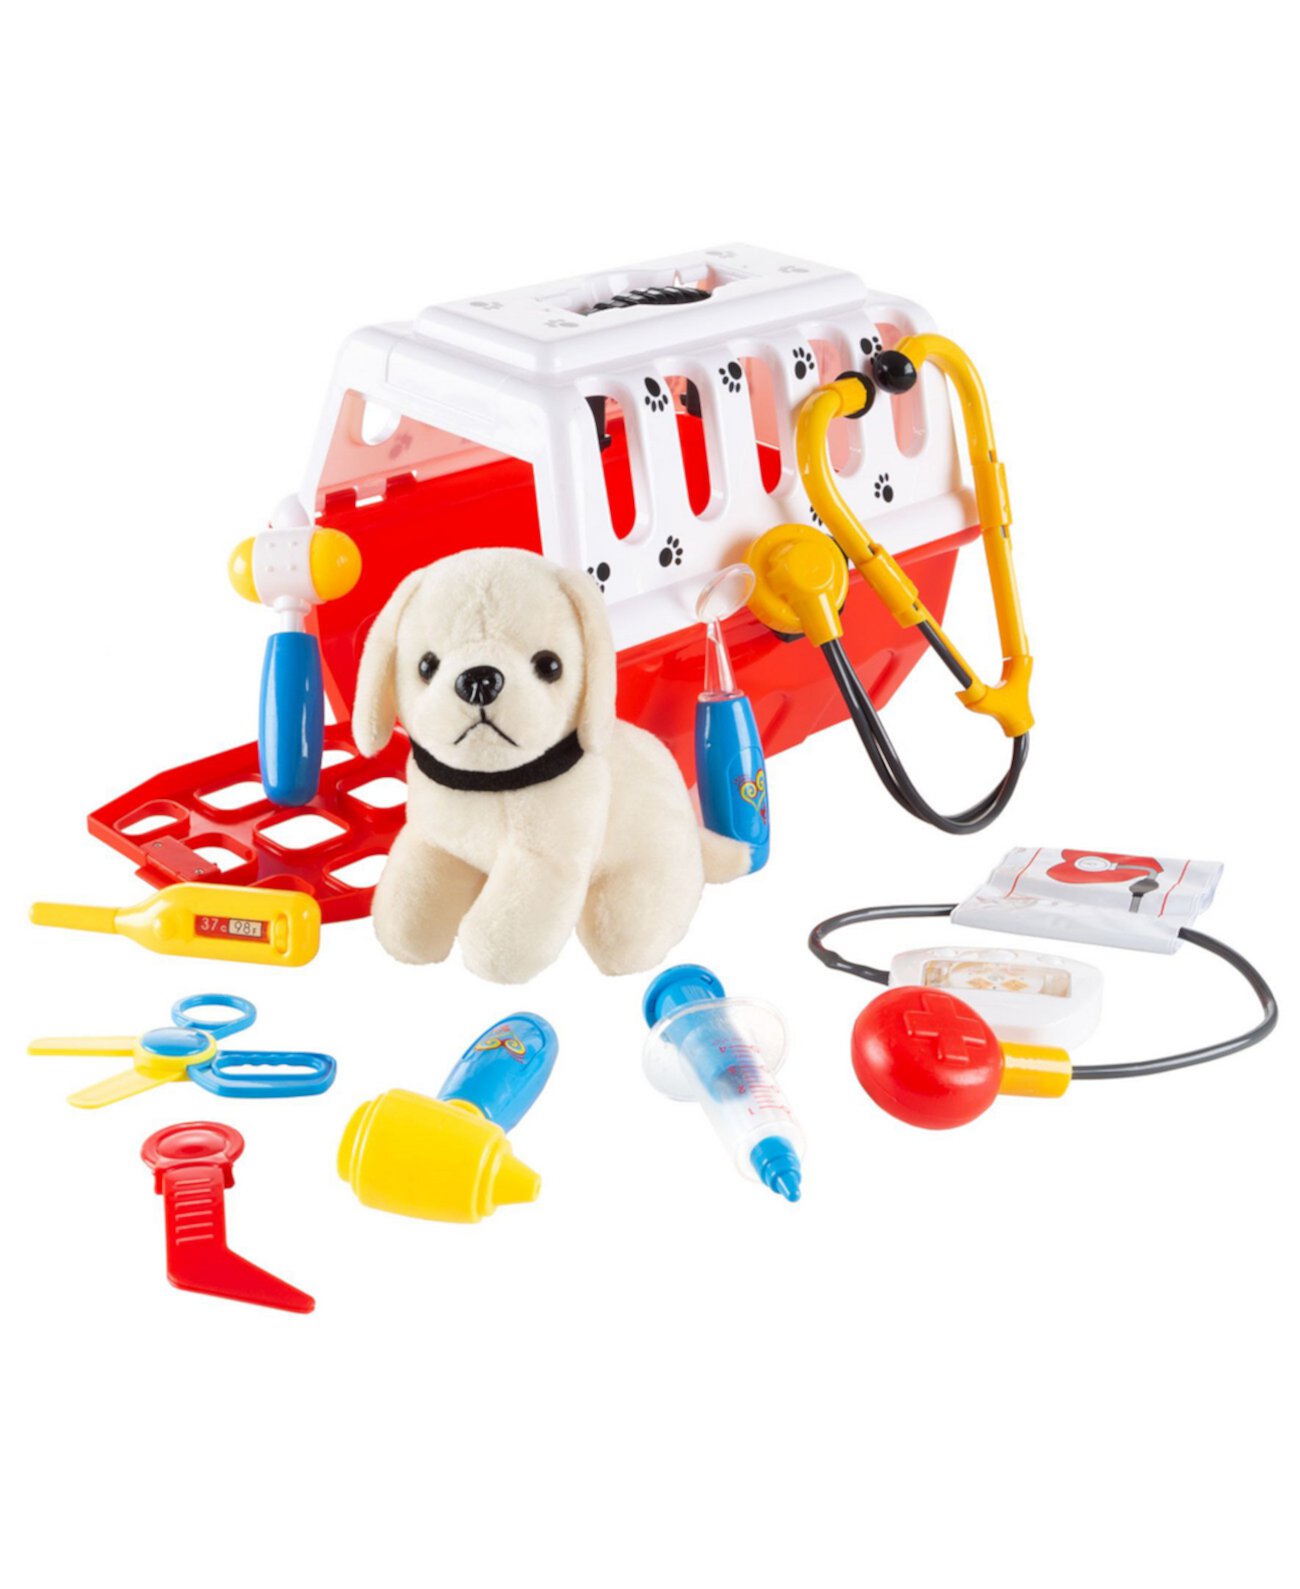 Ветеринарный набор Hey Play Kids с медицинскими принадлежностями для животных, плюшевой собакой и переноской для мальчиков и девочек, 11 предметов Trademark Global